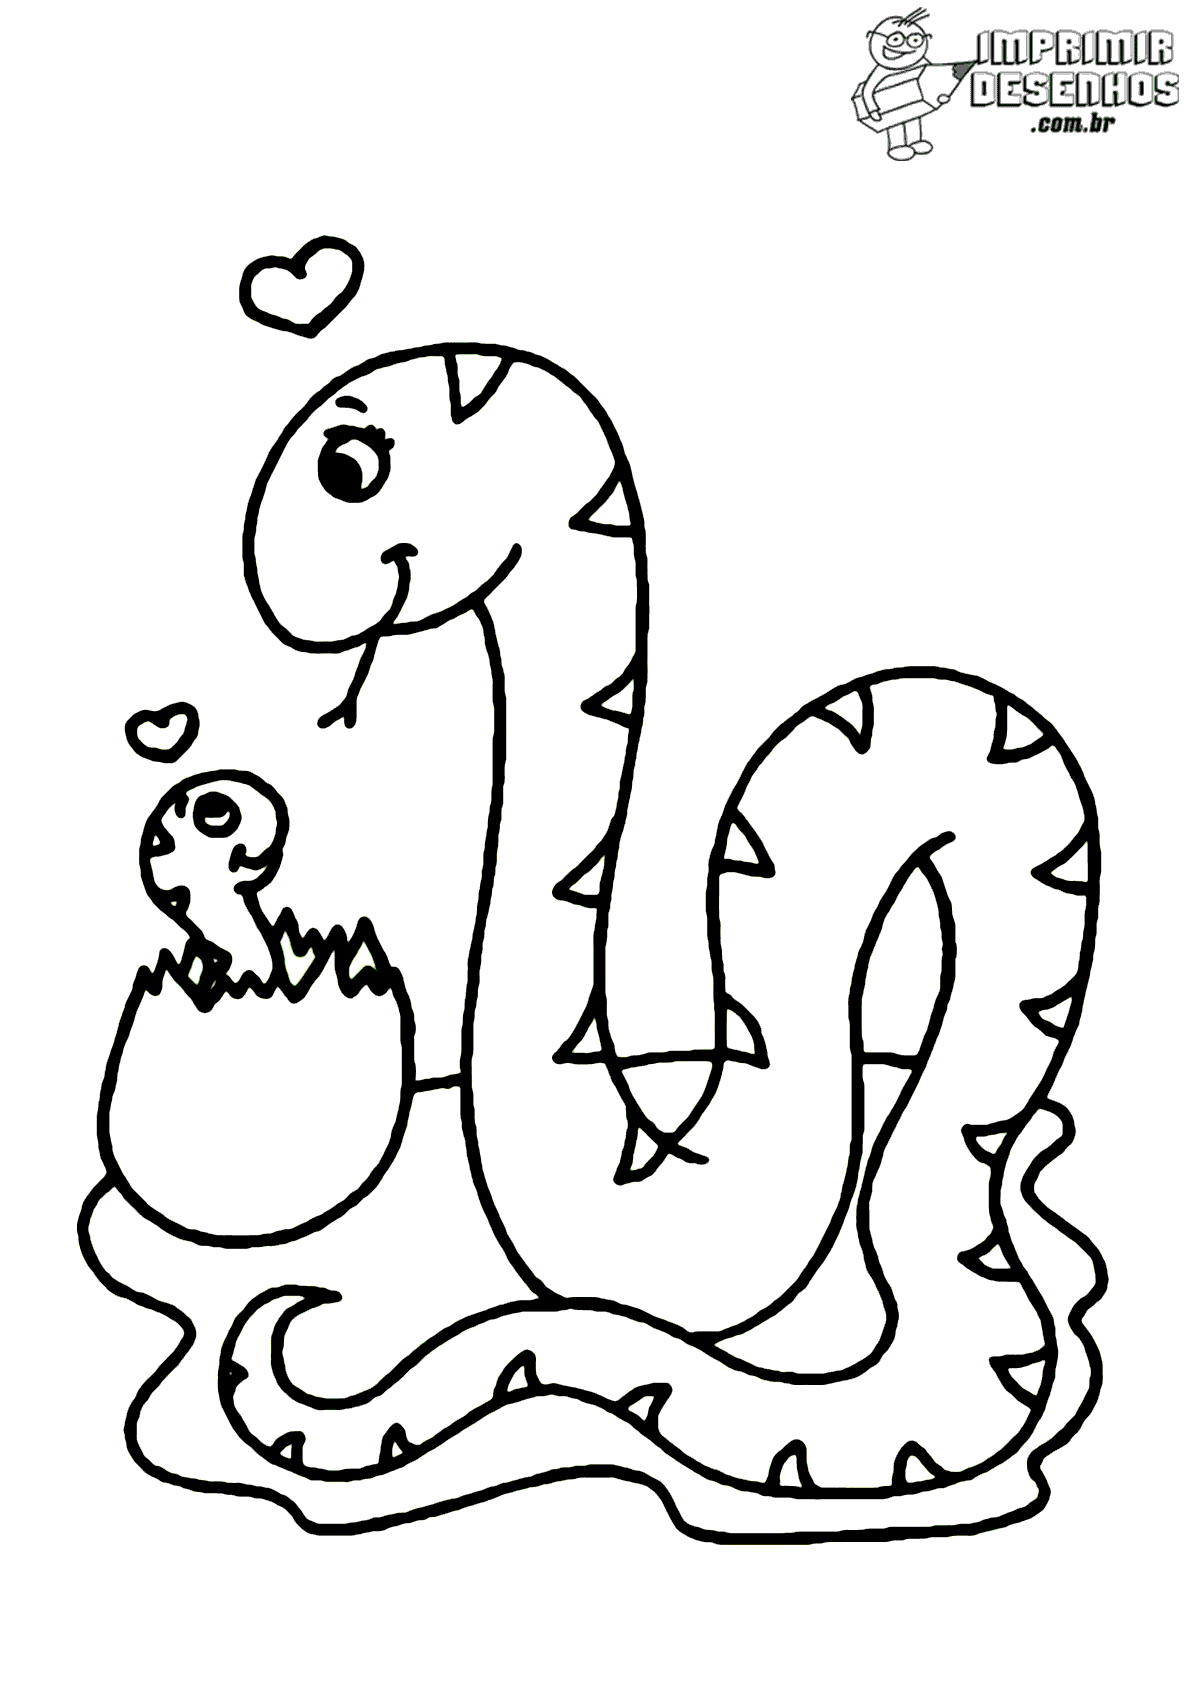 Cobra e filhote para colorir - Imprimir Desenhos